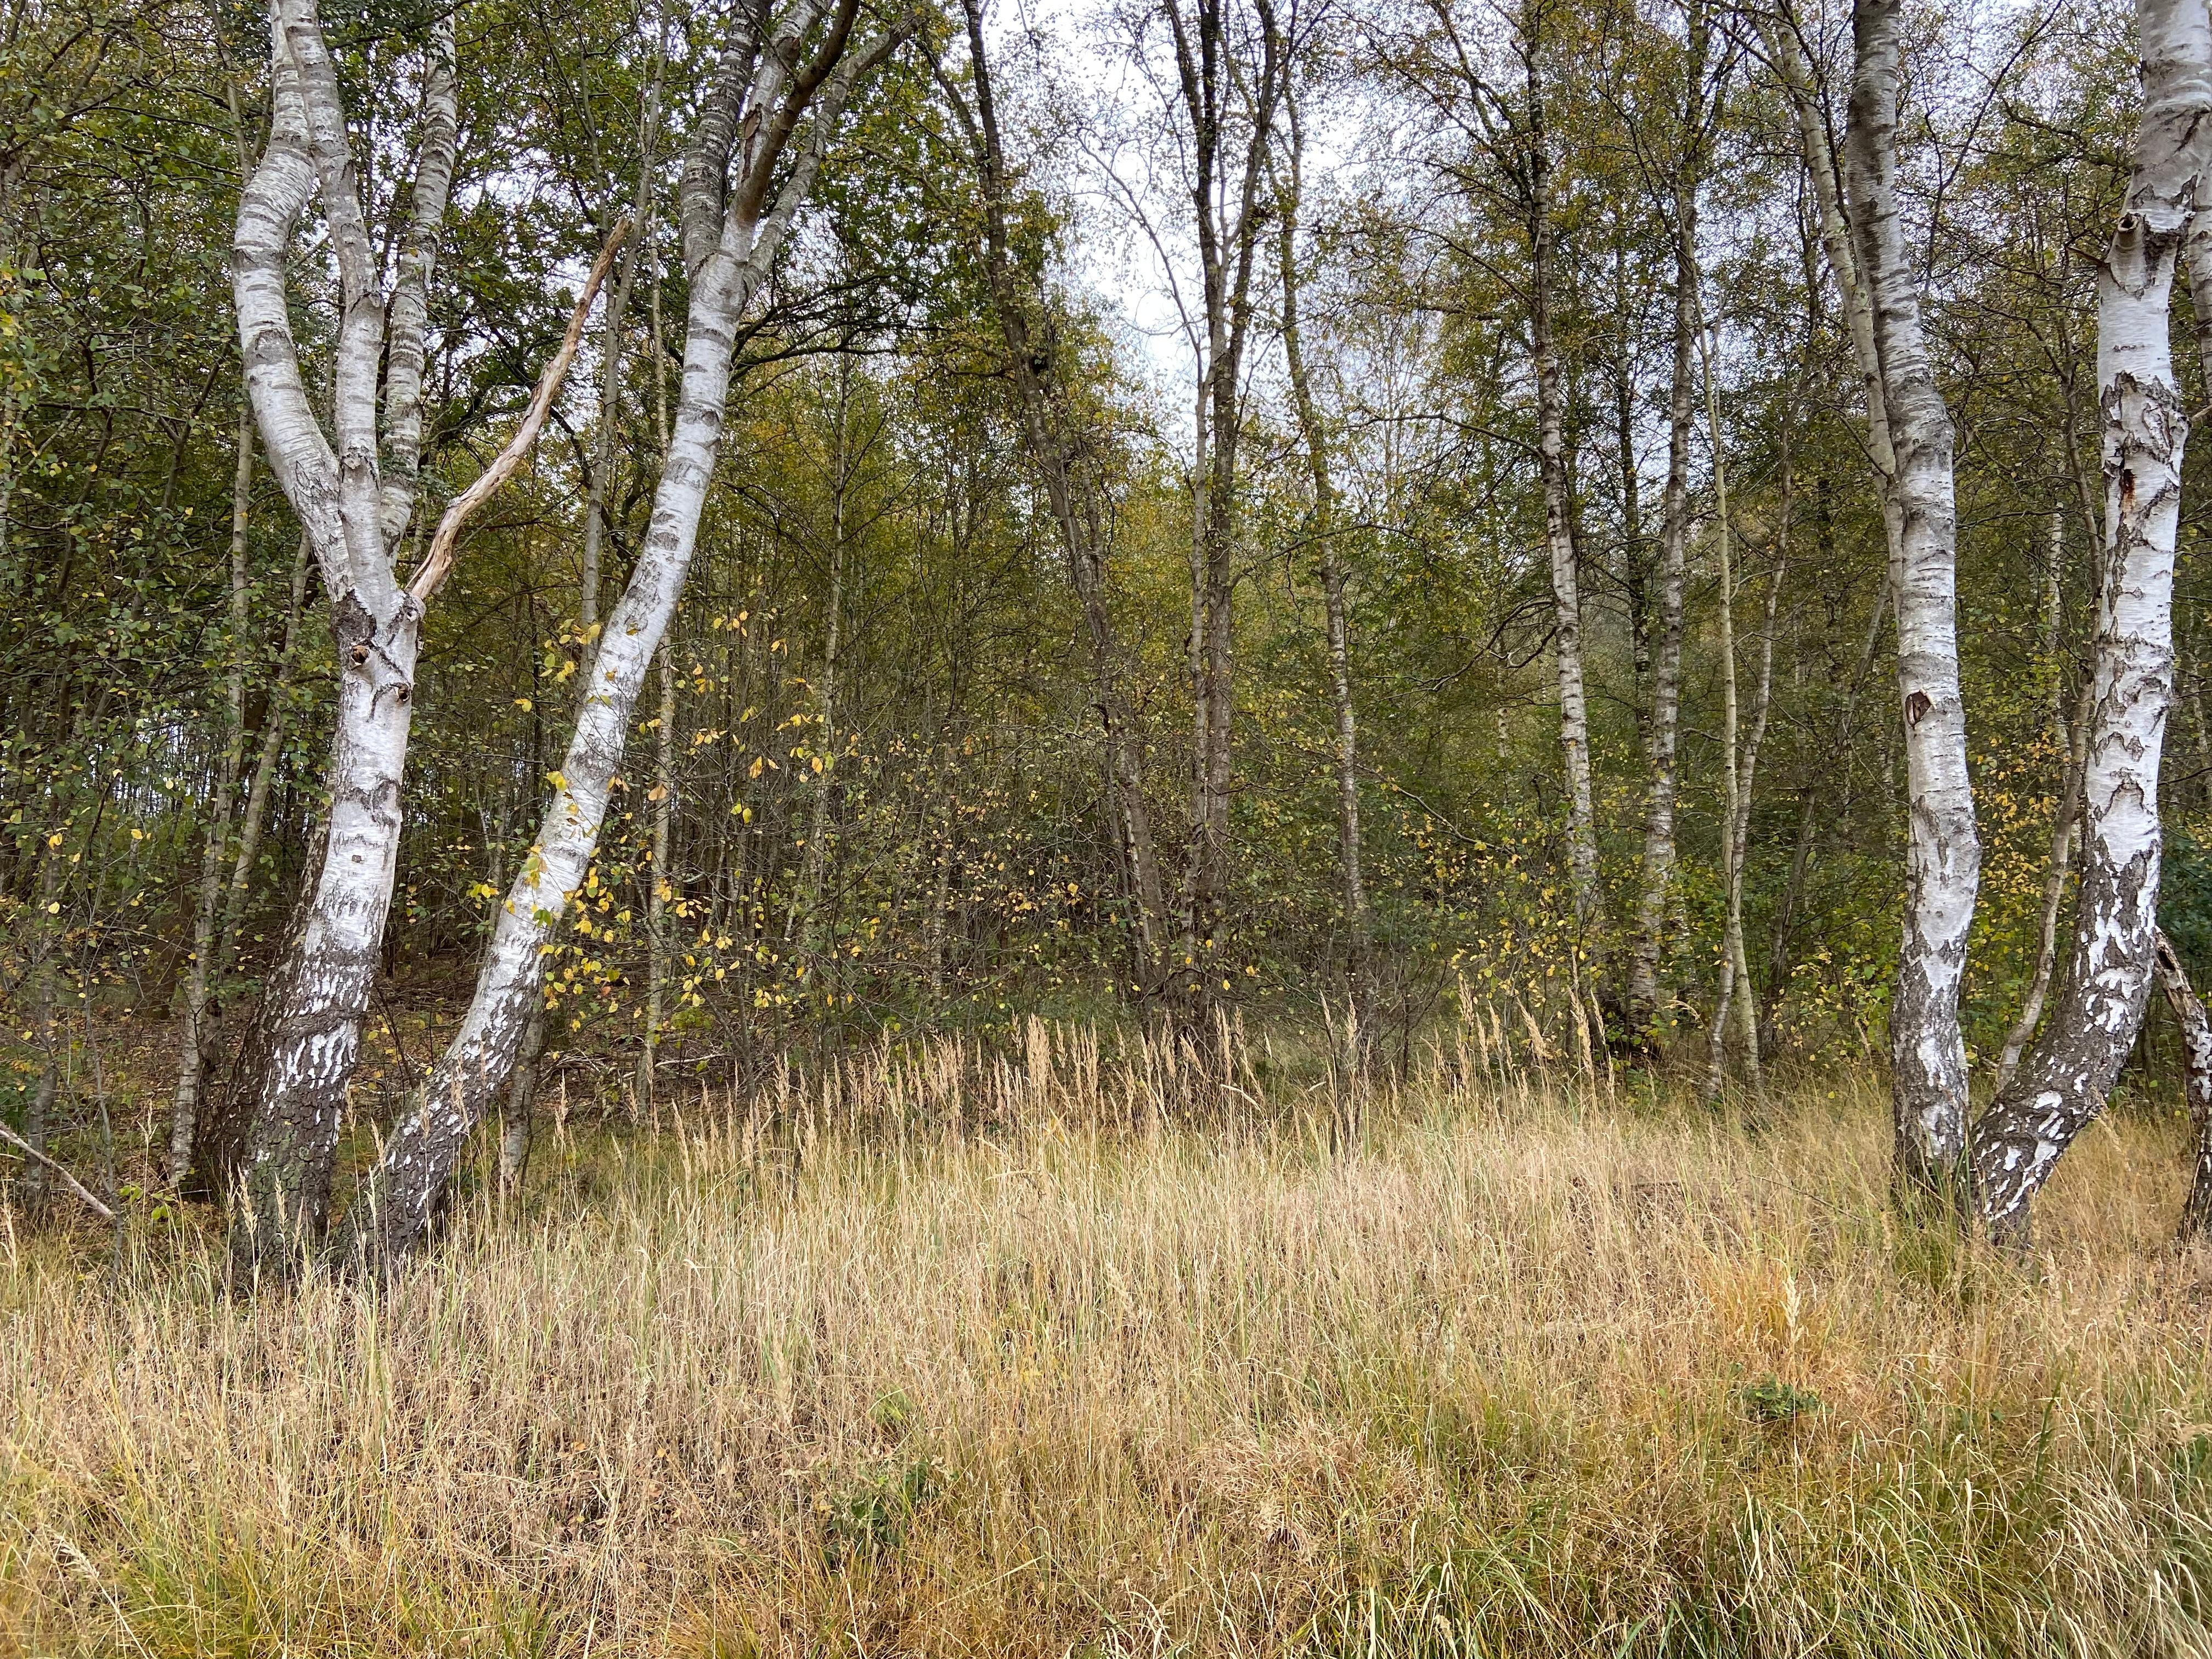 #Herbstspaziergang im Moor
#Birkenwald